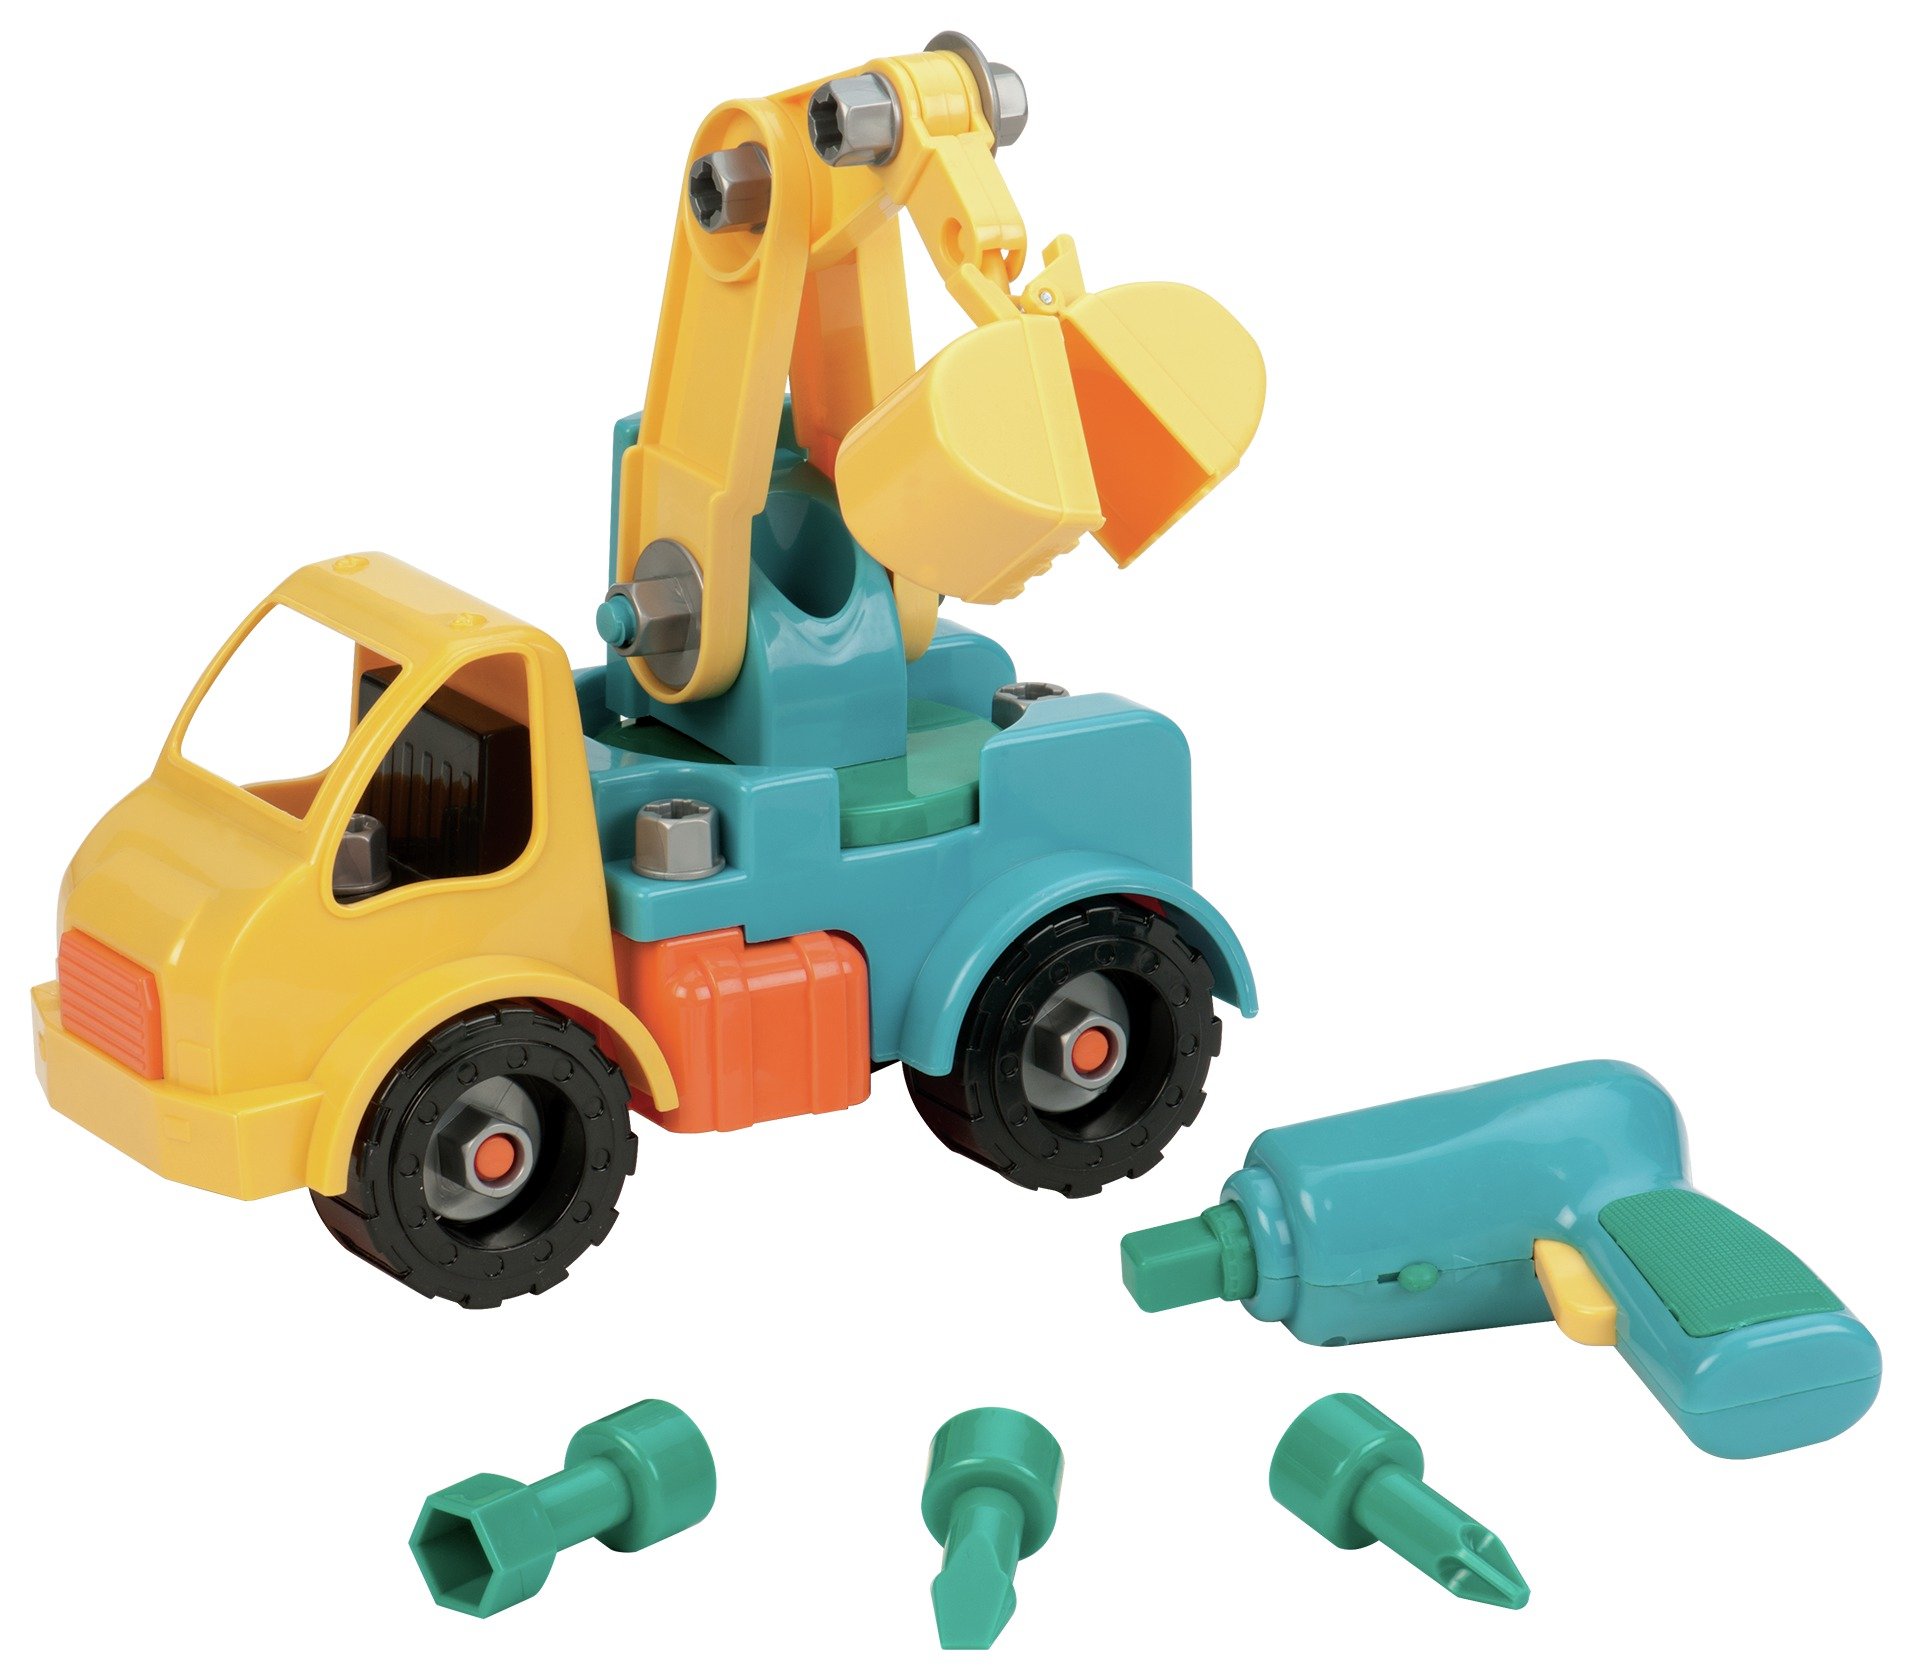 toys that can be taken apart